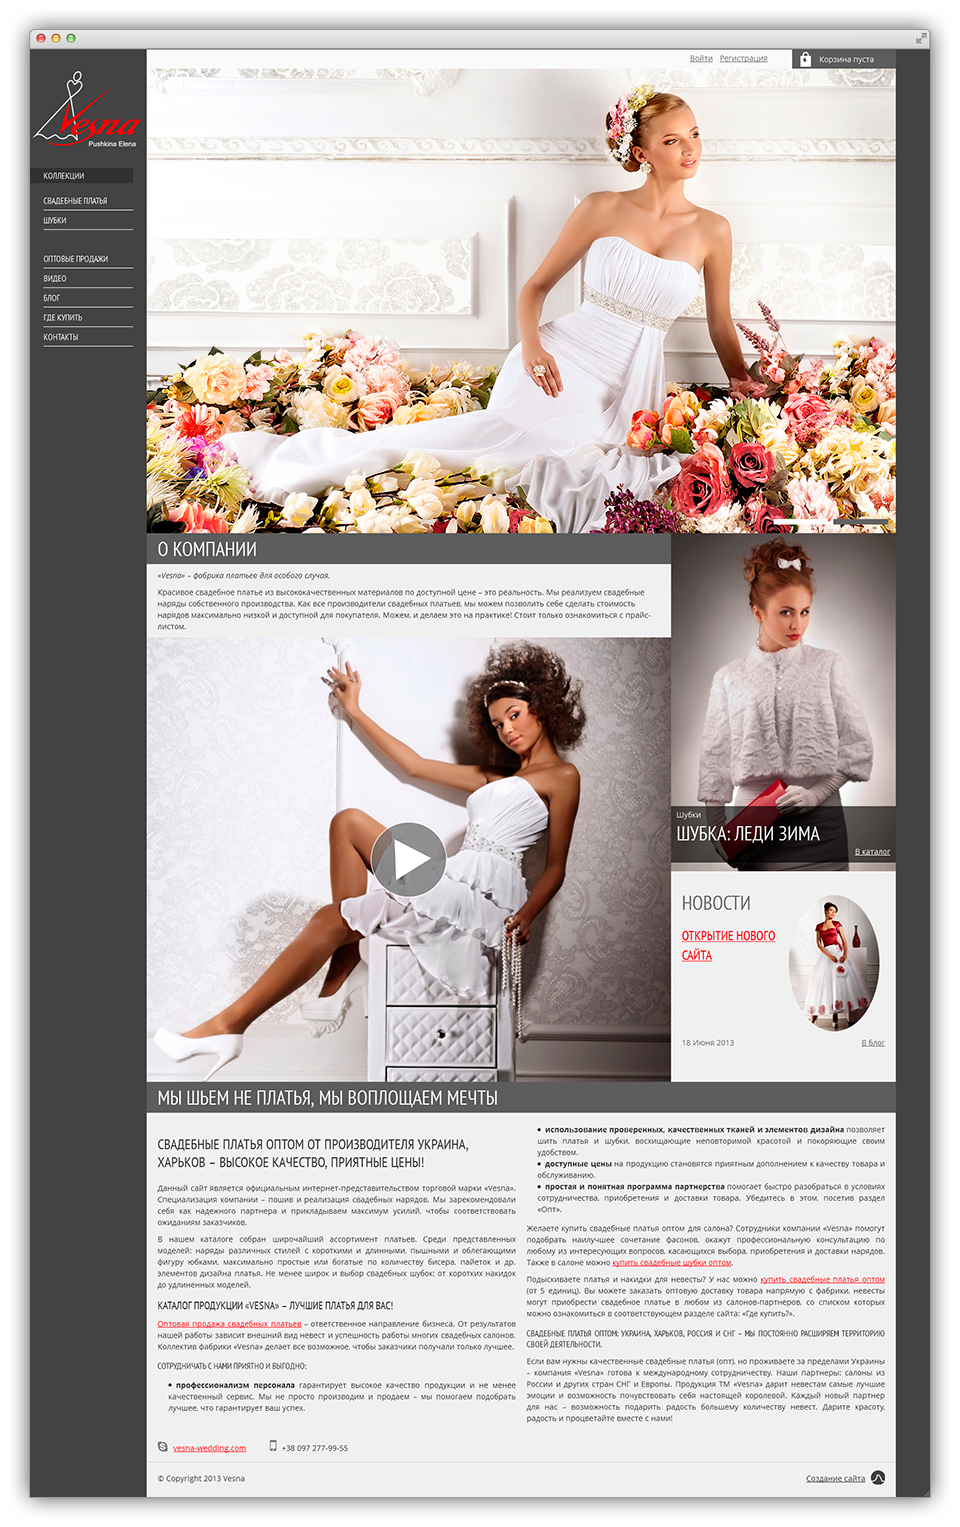 Создание сайта для торговой марки Vesna